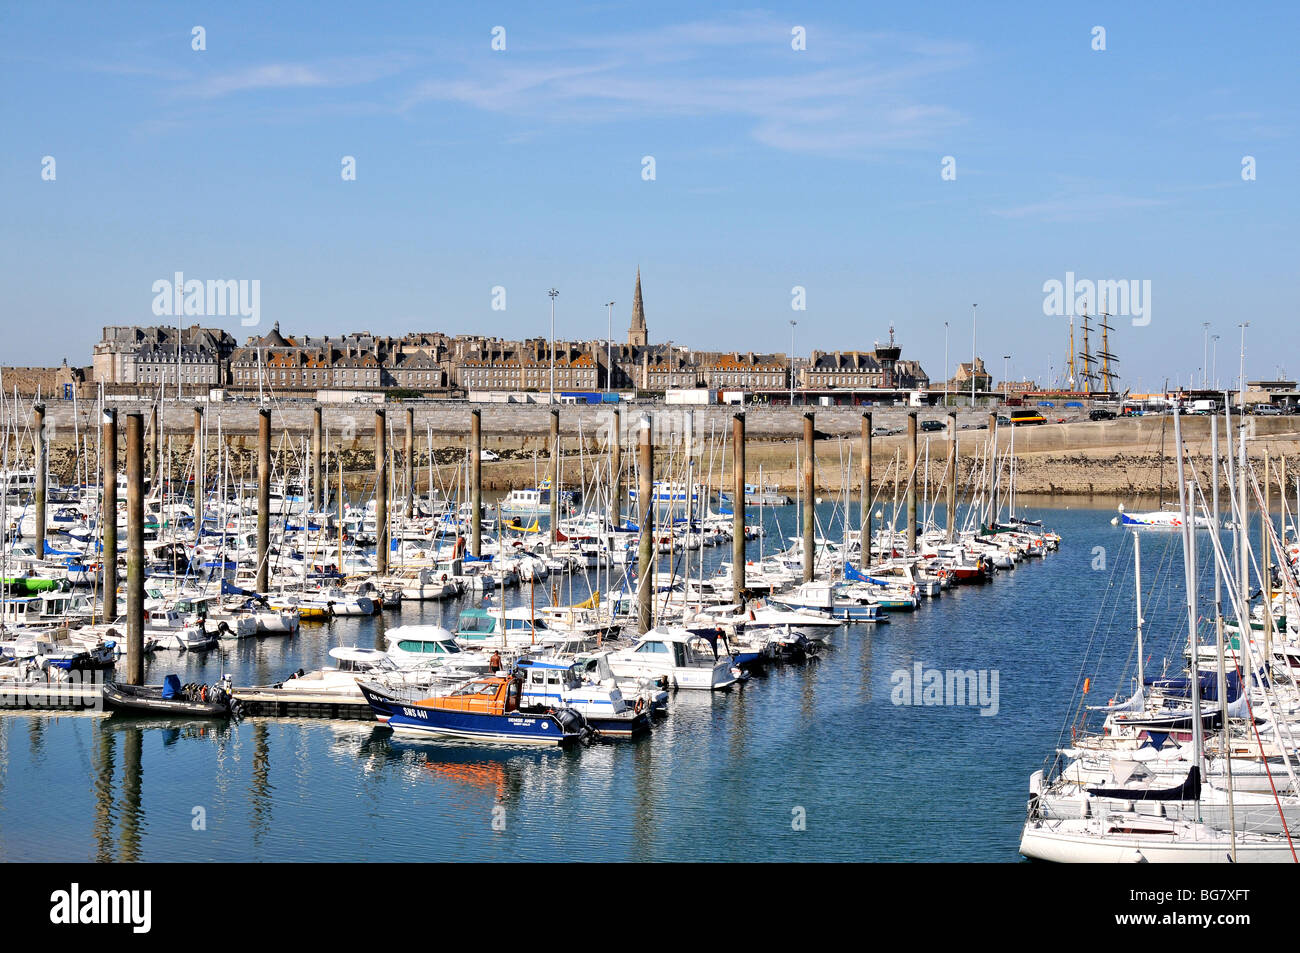 boats in marina, Saint Malo, Brittany, France Stock Photo